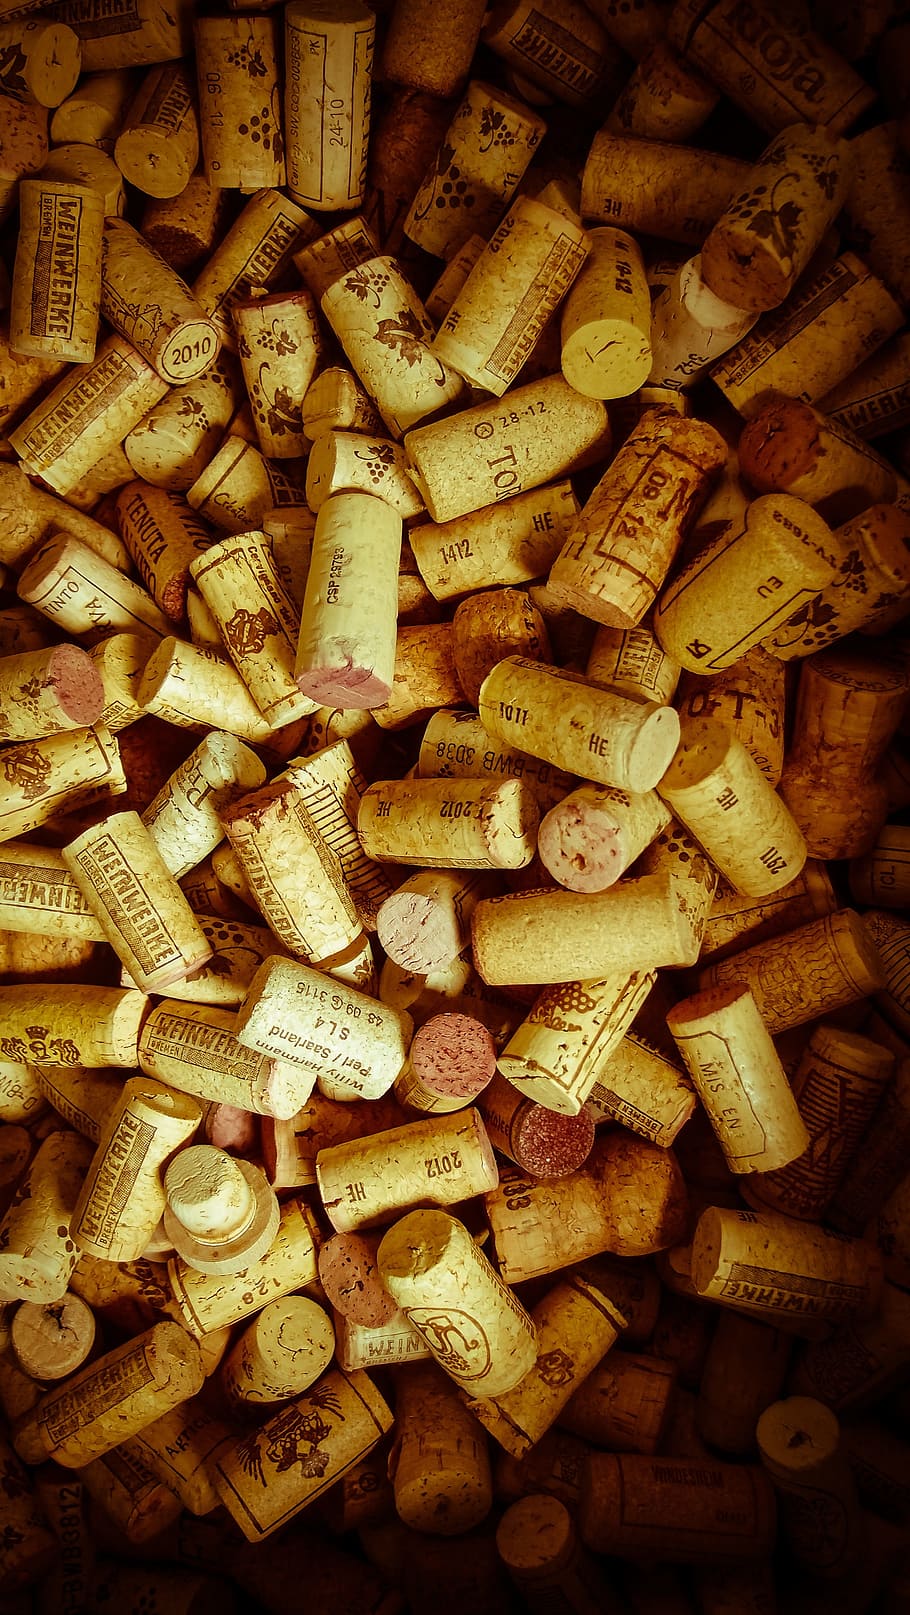 cork-wine-corks-collection-bottle-corks.jpg